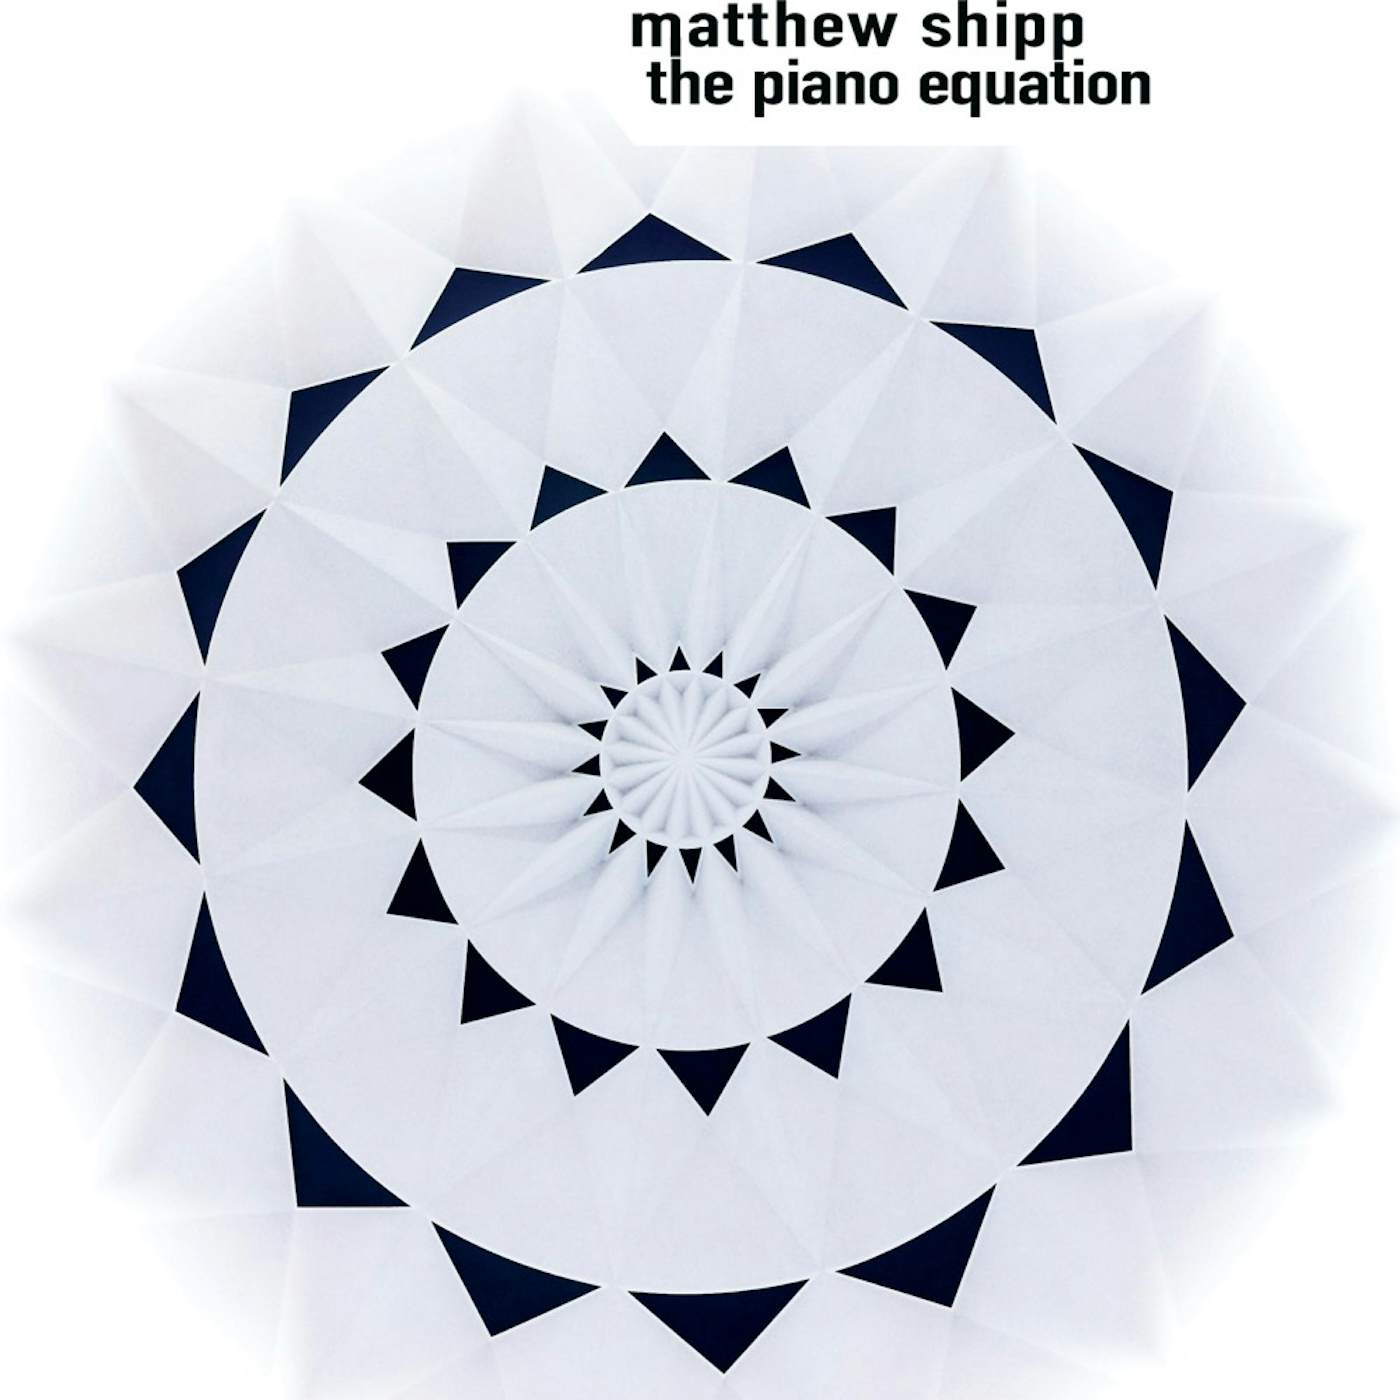 Matthew Shipp PIANO EQUATION CD